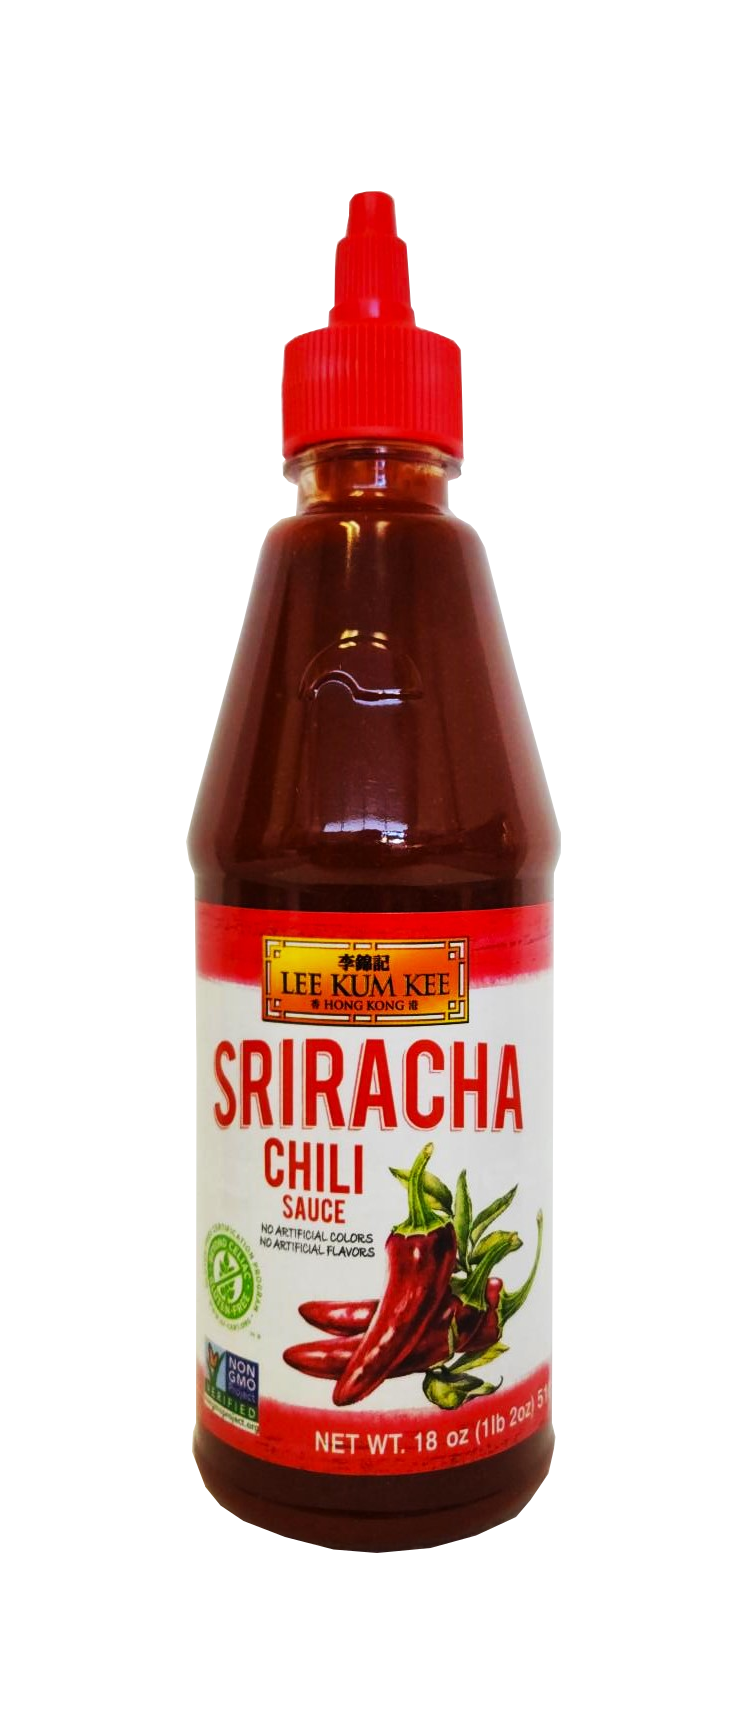 Lee Kum Kee Sriracha Chili Sauce 18 oz.